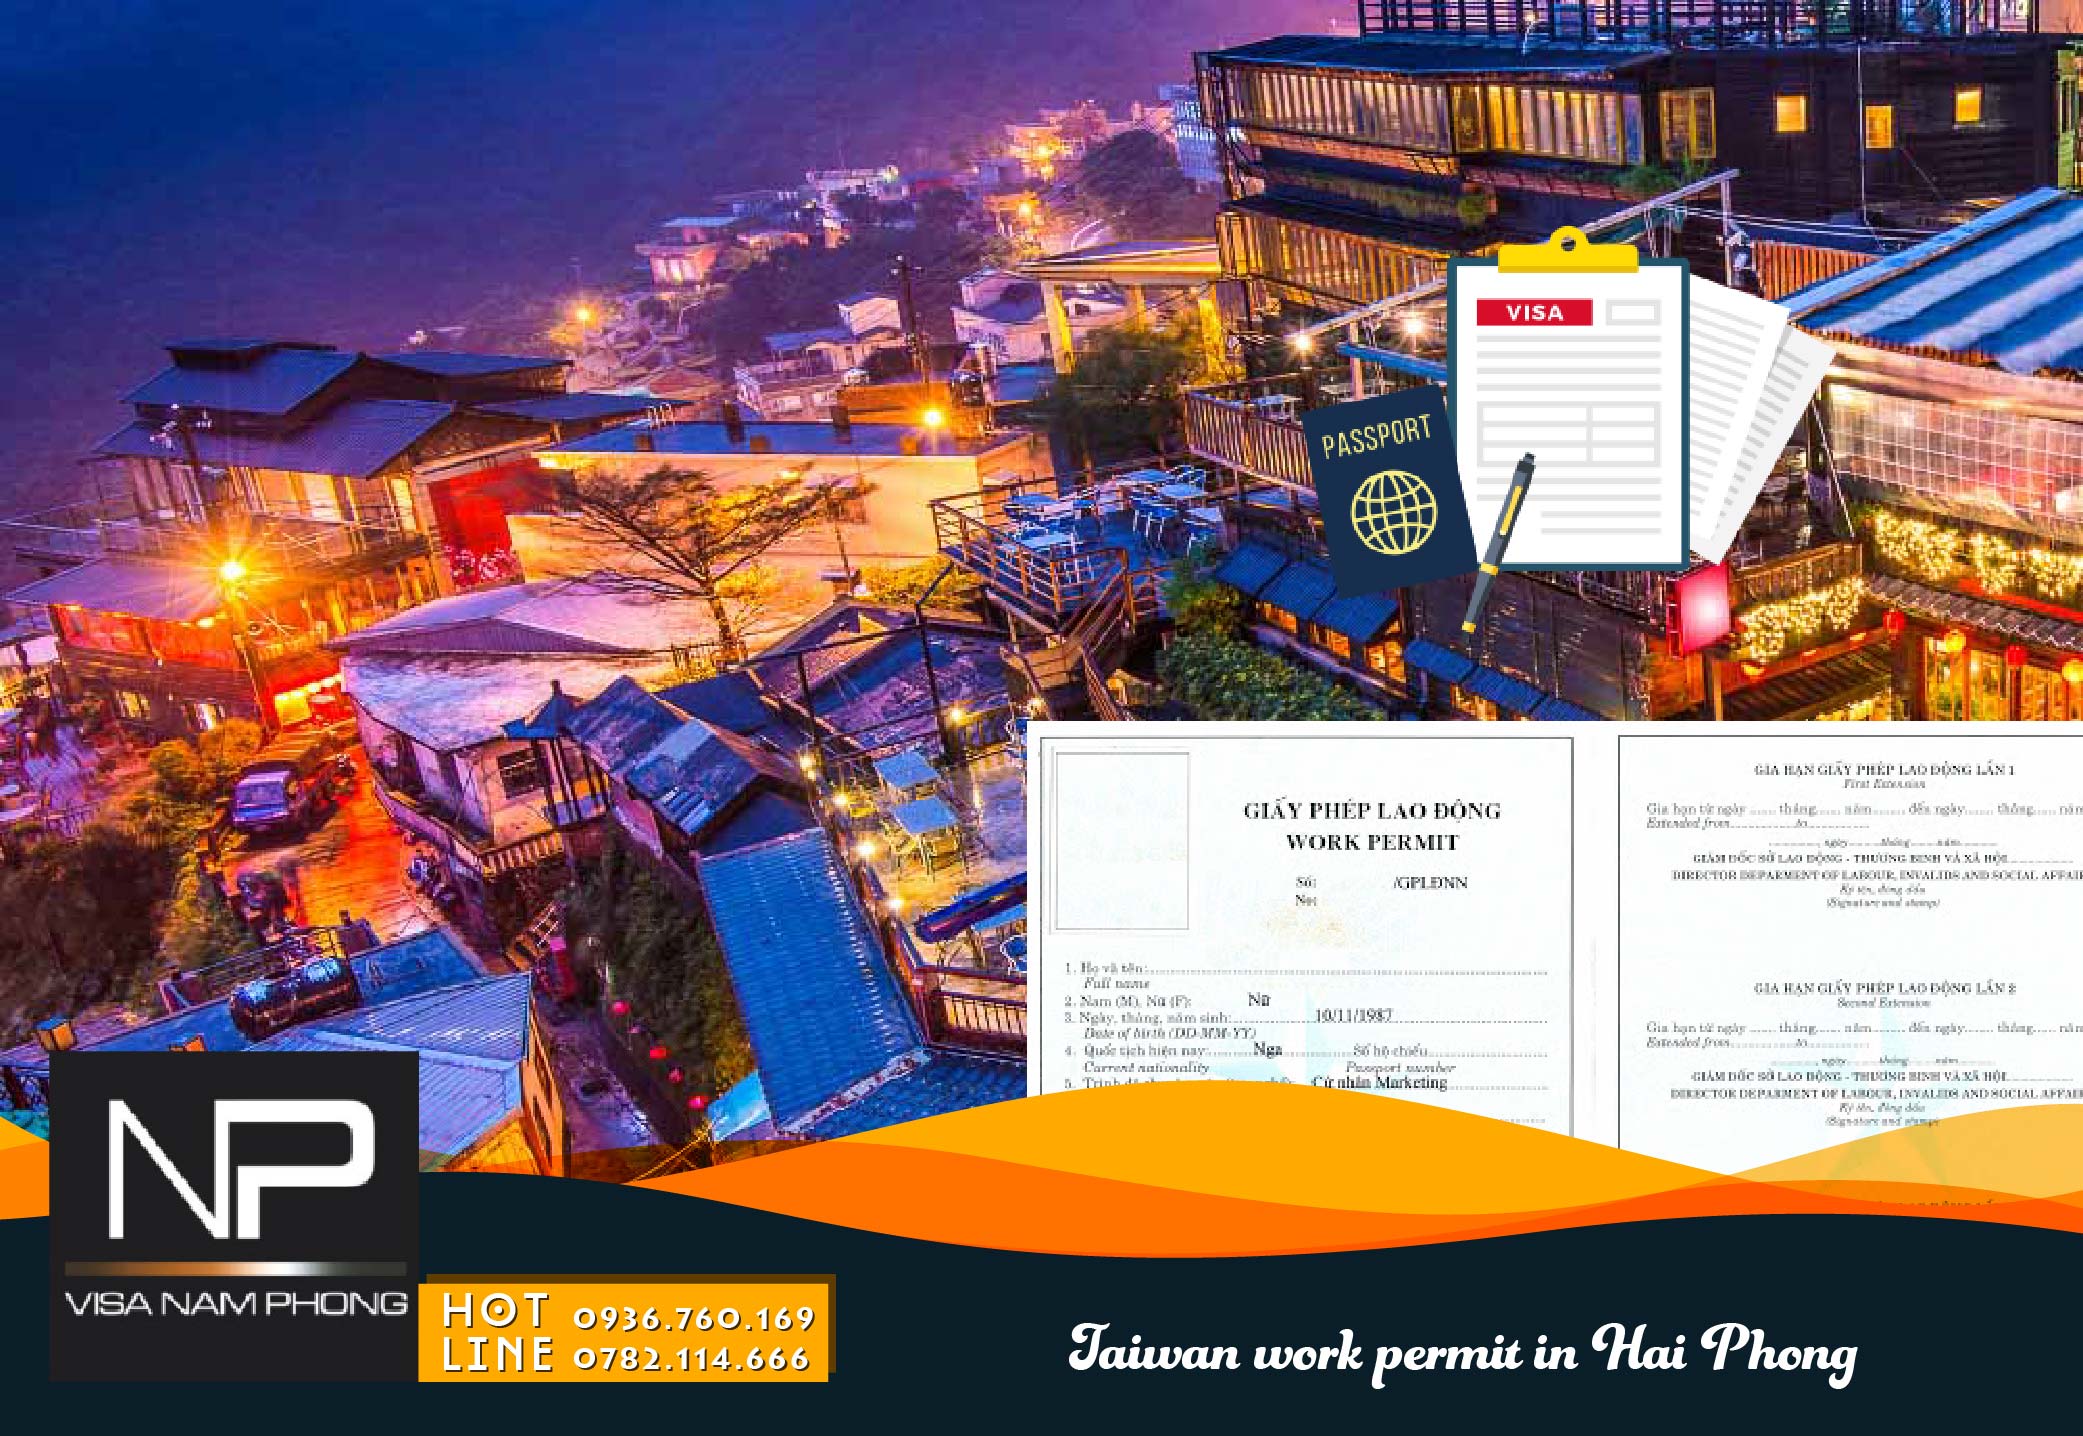 Taiwan work permit in Hai Phong